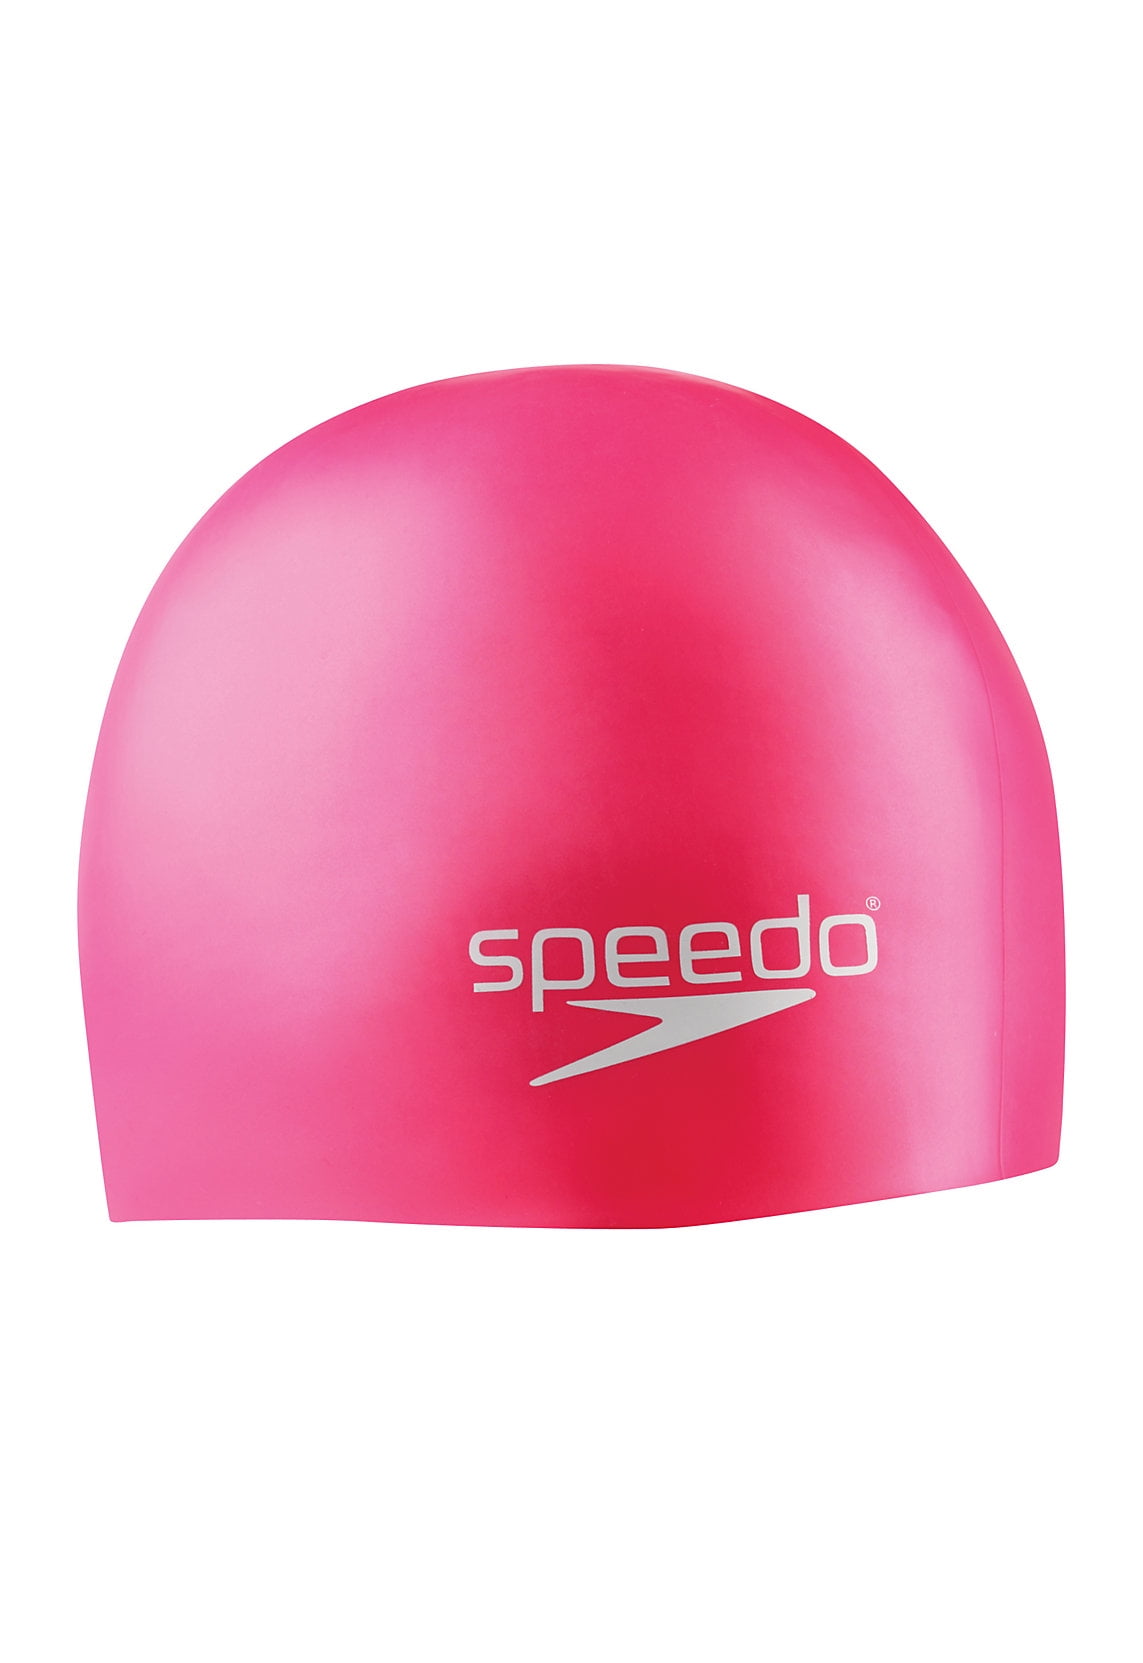 Speedo Junior Kids Silicone Swimming Cap Reversible Green 811309B962 6-14 Years 